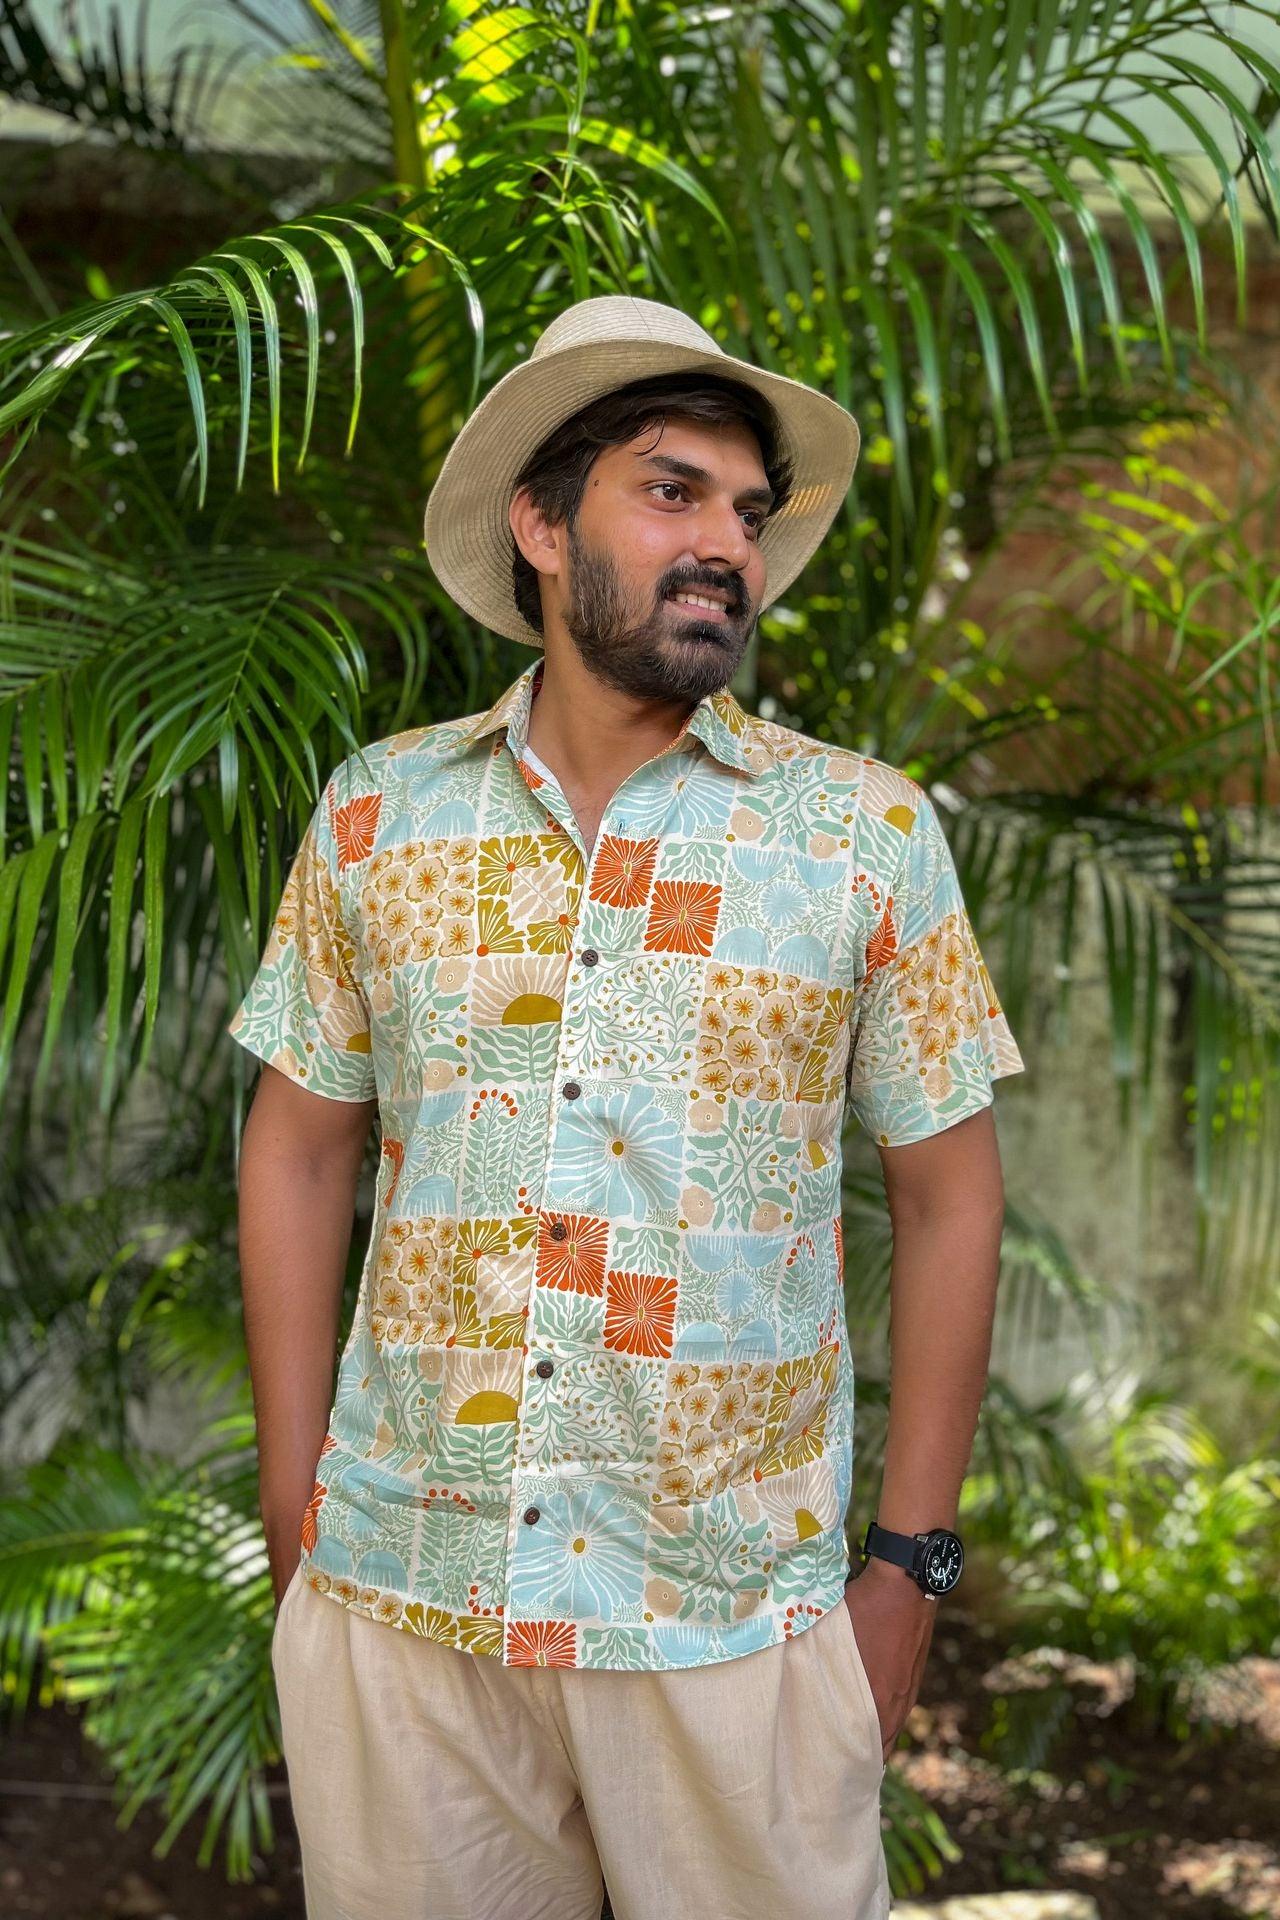 Pastel organic cotton printed vintage style men's shirt